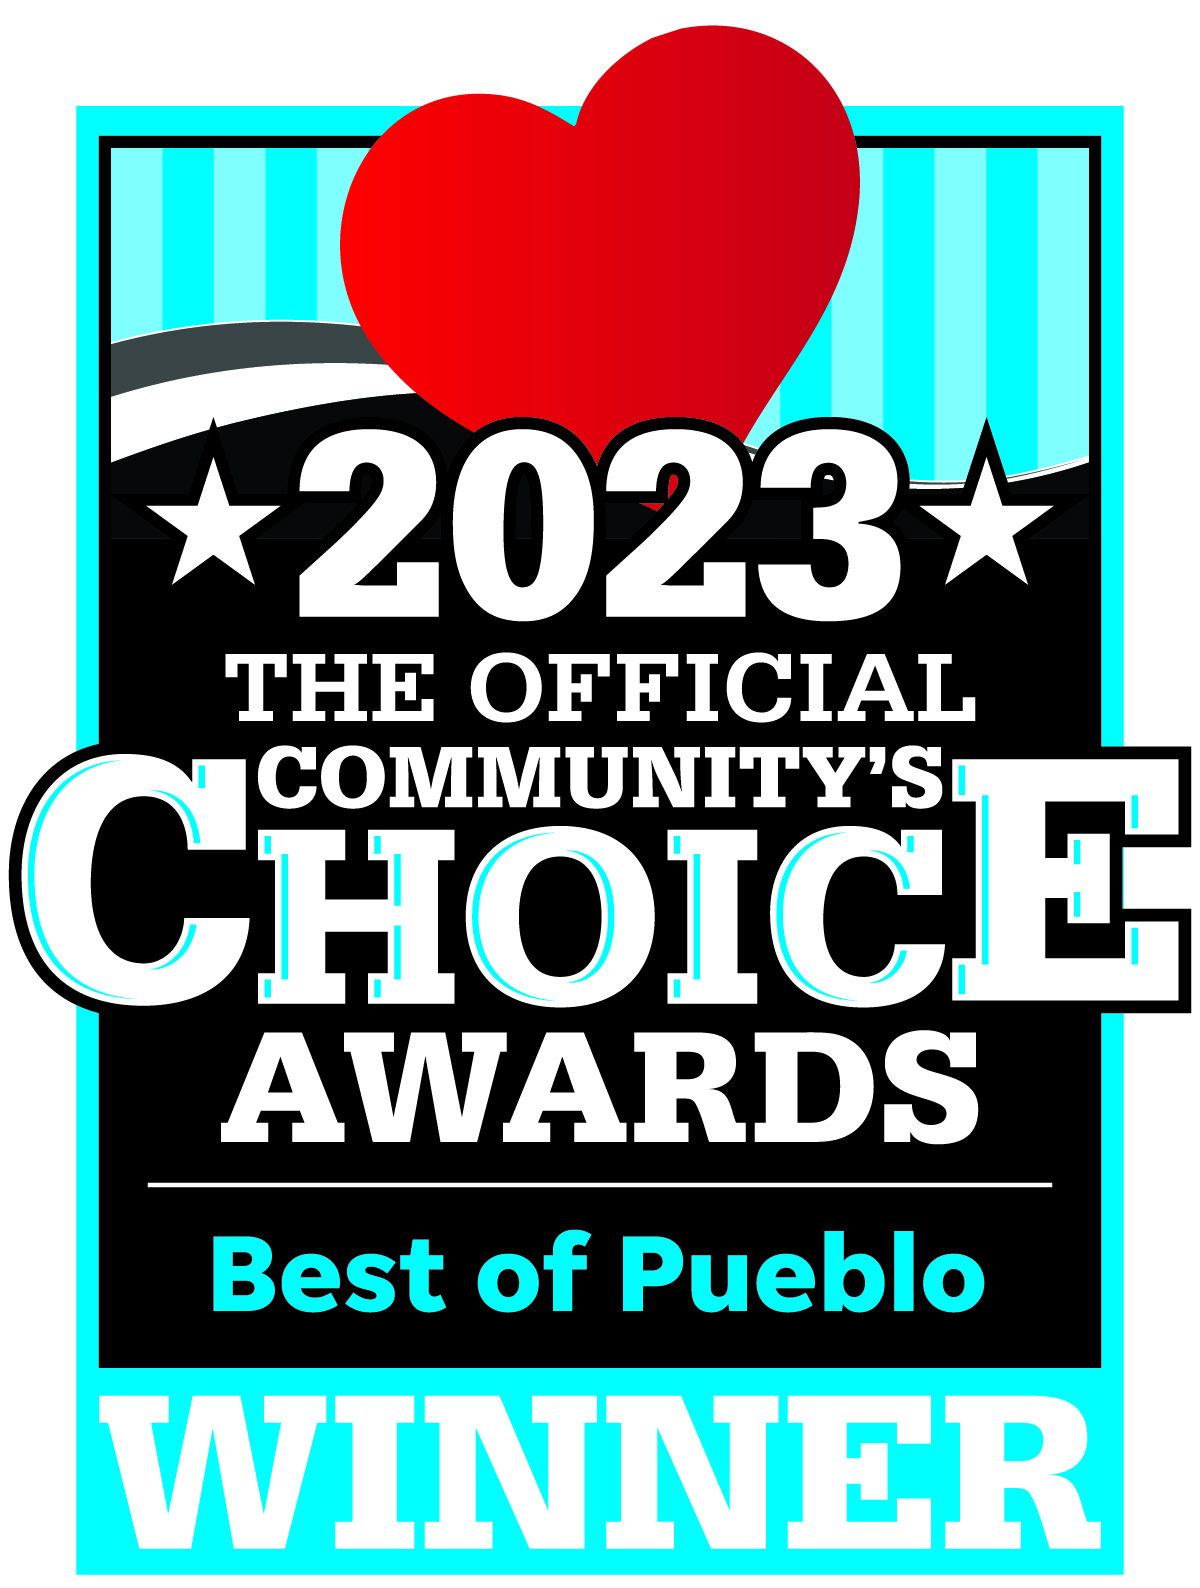 Best of Pueblo